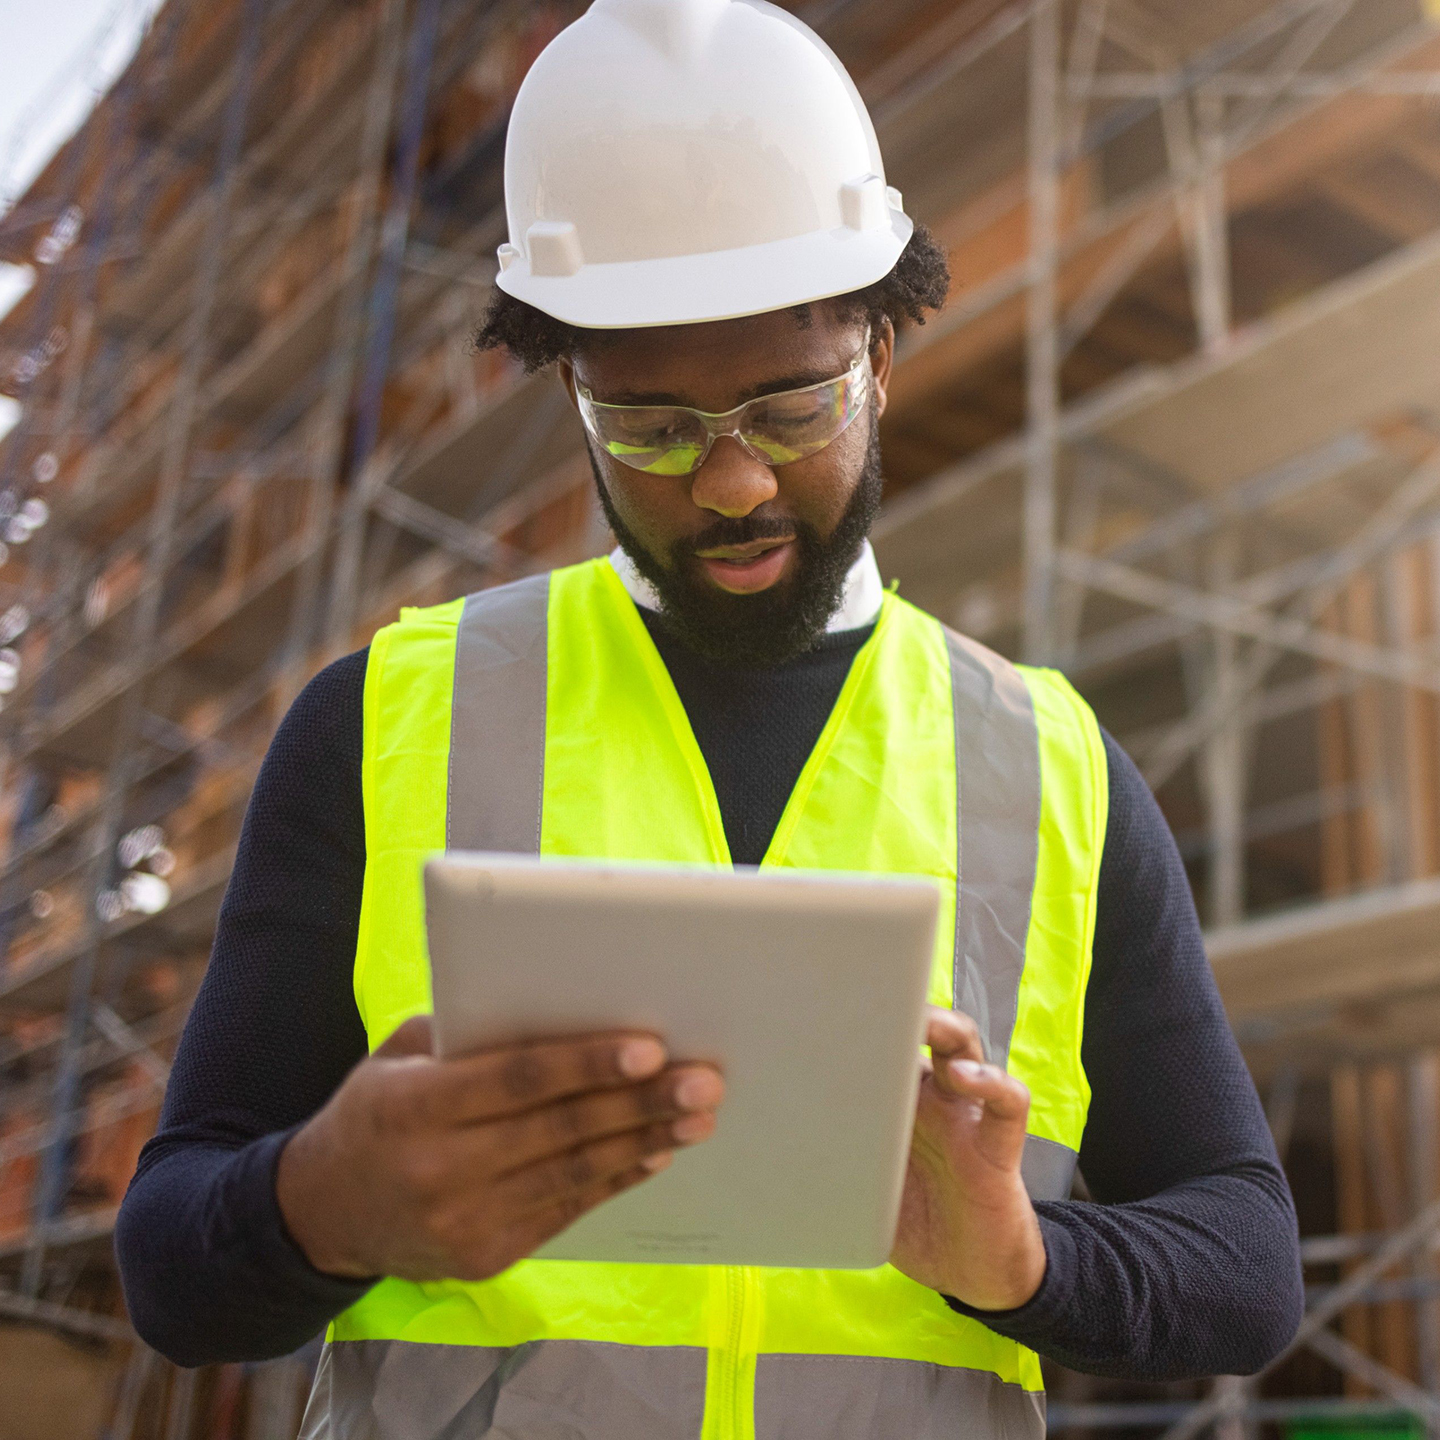 Trabajador de la construcción con tablet en mano frente a la obra.